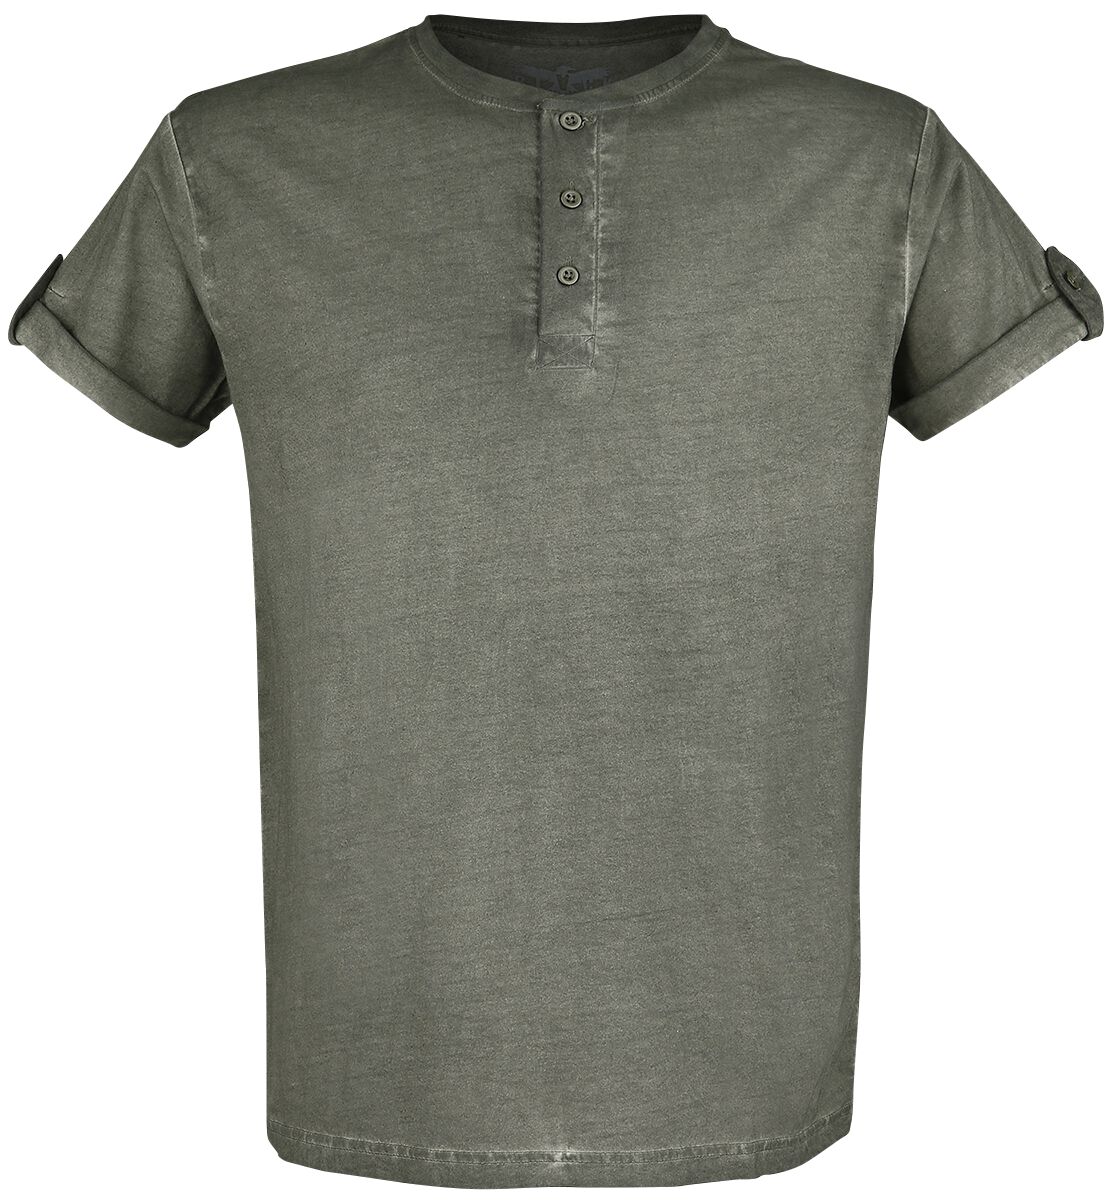 Black Premium by EMP T-Shirt - grünes T-Shirt mit Knopfleiste und umgeschlagenen Ärmeln - S bis 5XL - für Männer - Größe 3XL - grün